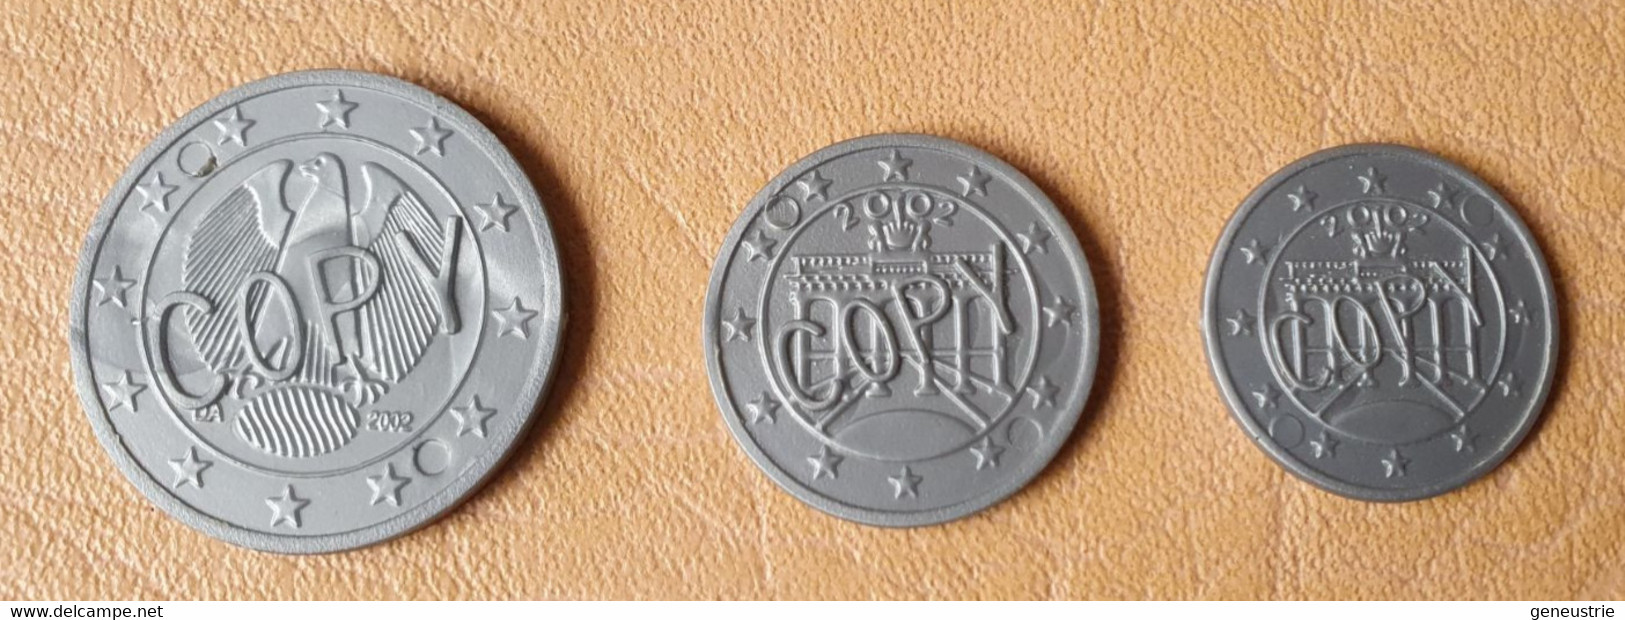 Lot De 3 Monnaies Plastique D'école En Euro "Copy" Allemagne - School Coins - Firma's